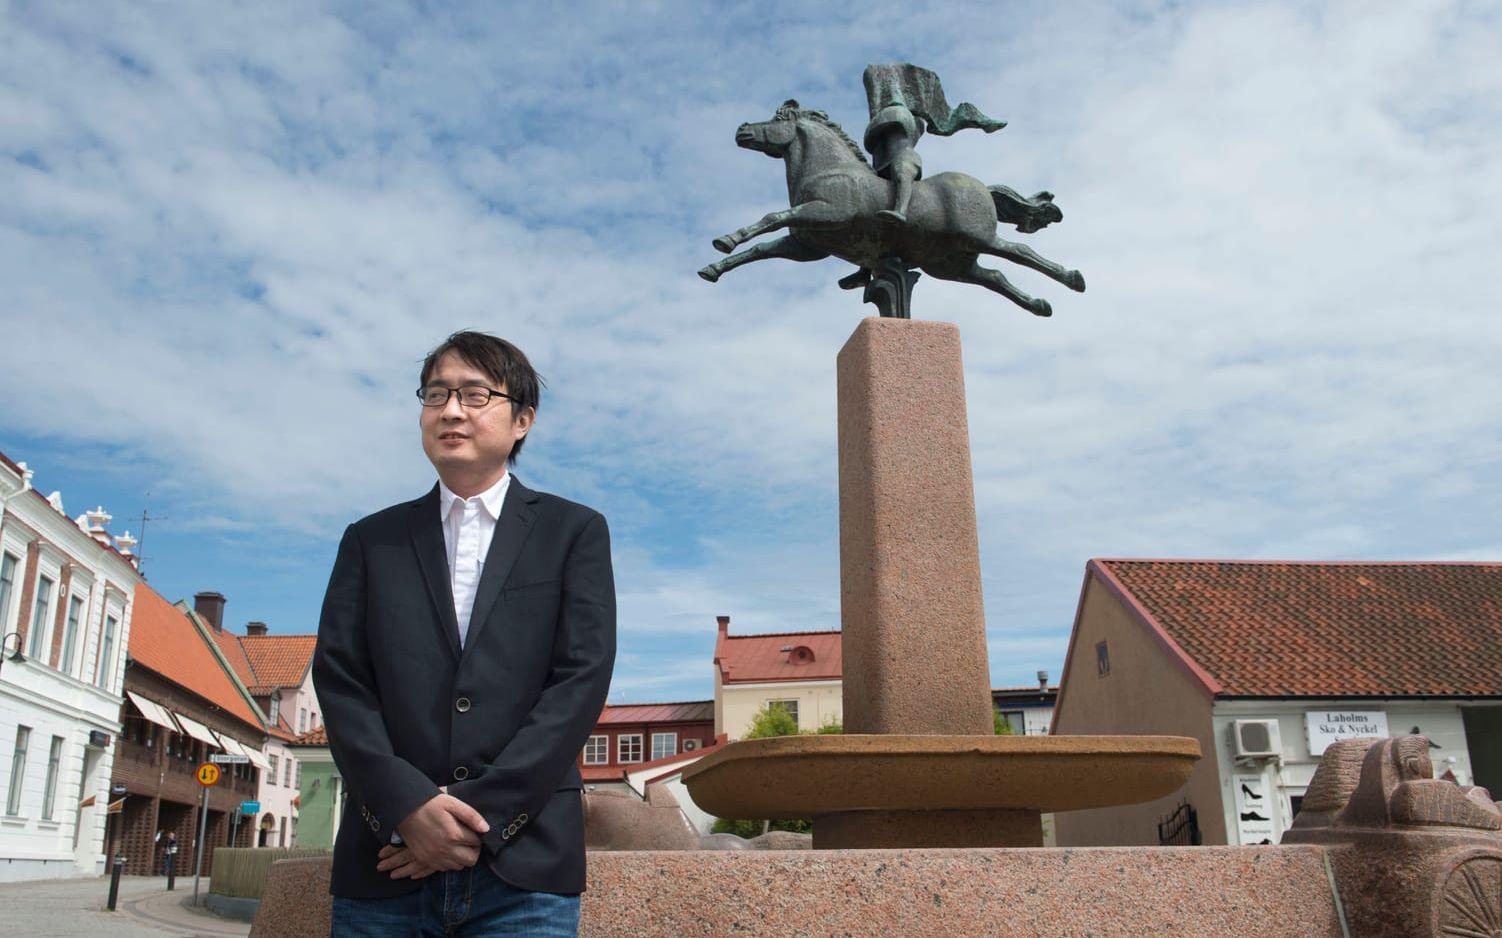 Gästade Laholm. Kinesiske författaren A Yi besökte Laholm som enda svenska stad under sin lanseringsturné i Europa. HP mötte honom inför. Foto: Jari Välitalo.